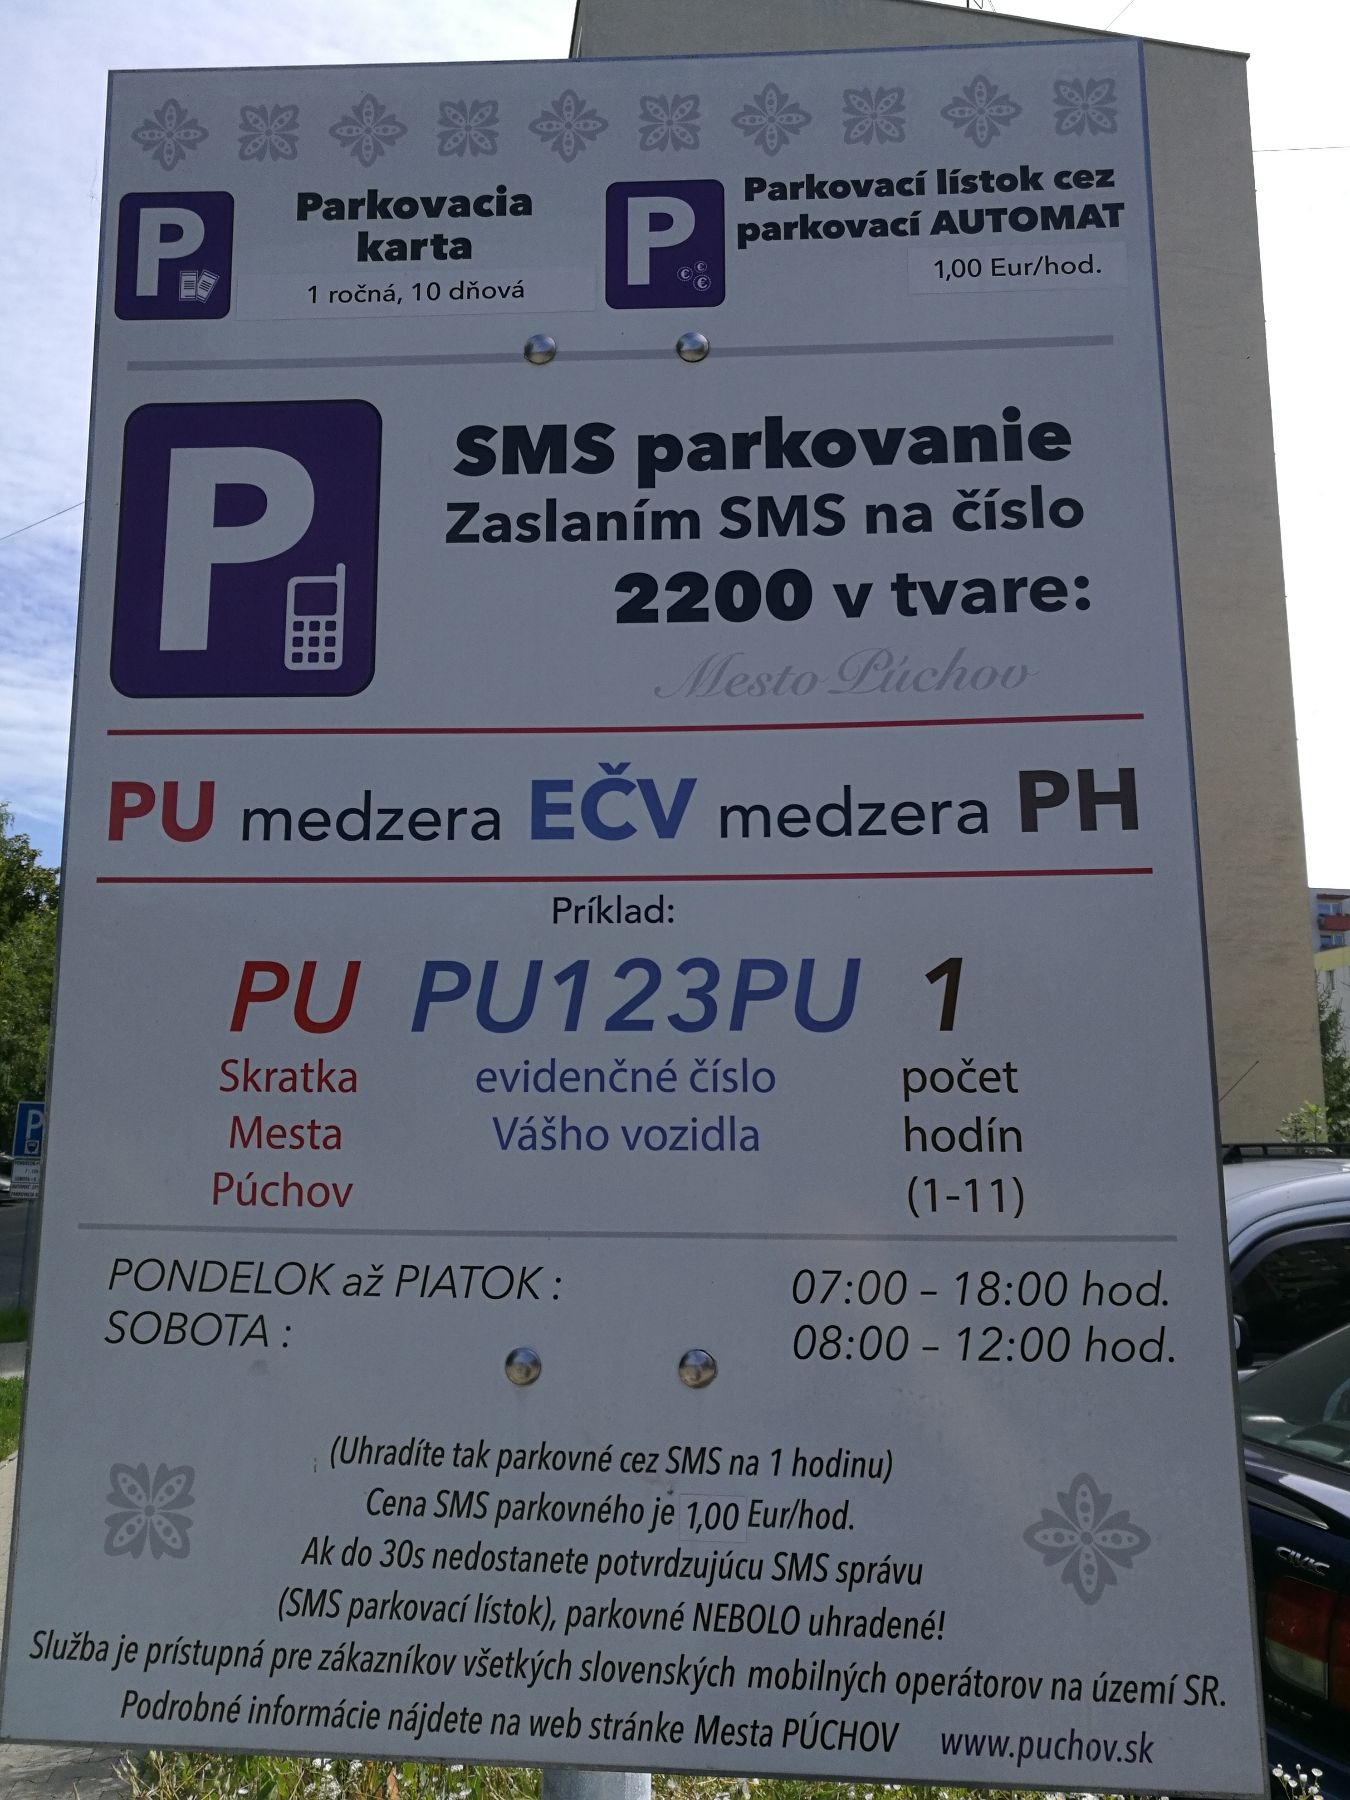 Komenského - parkovanie, , Púchov | Odkazprestarostu.sk